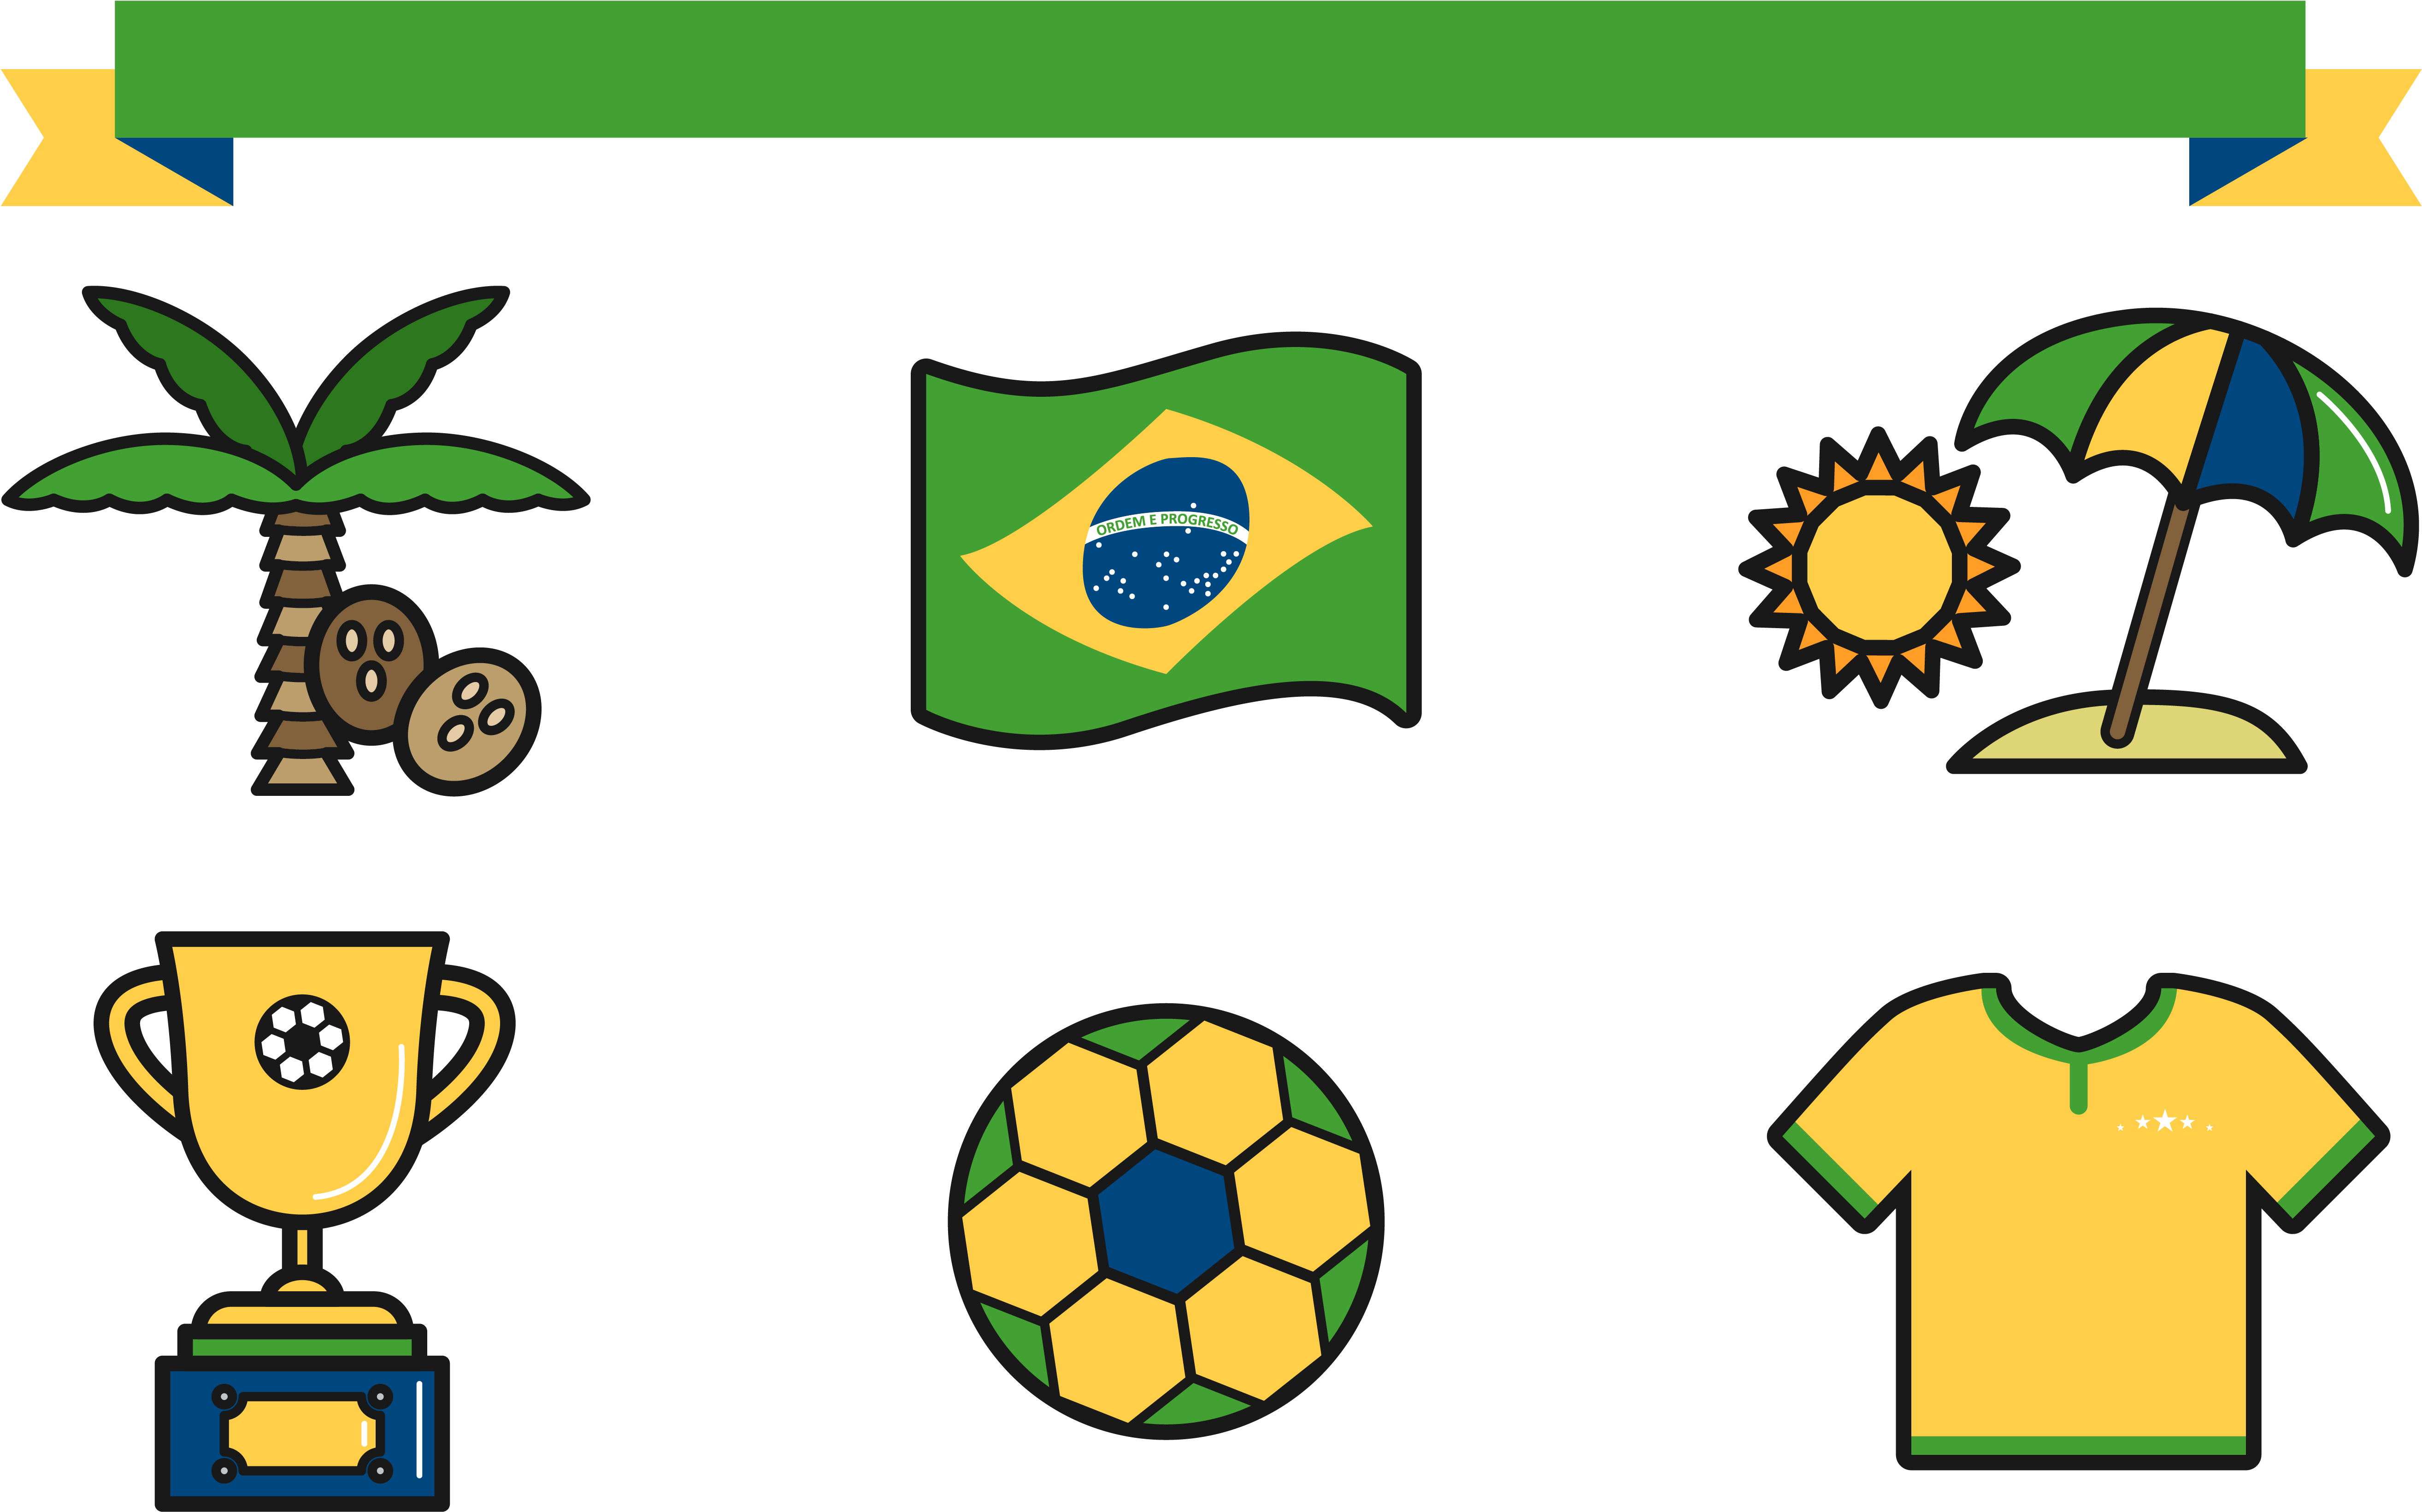 Rio De Janeiro 2016 Summer Olympics Flag Of Brazil - Rio De Janeiro 2016 Summer Olympics Flag Of Brazil (5833x4083)